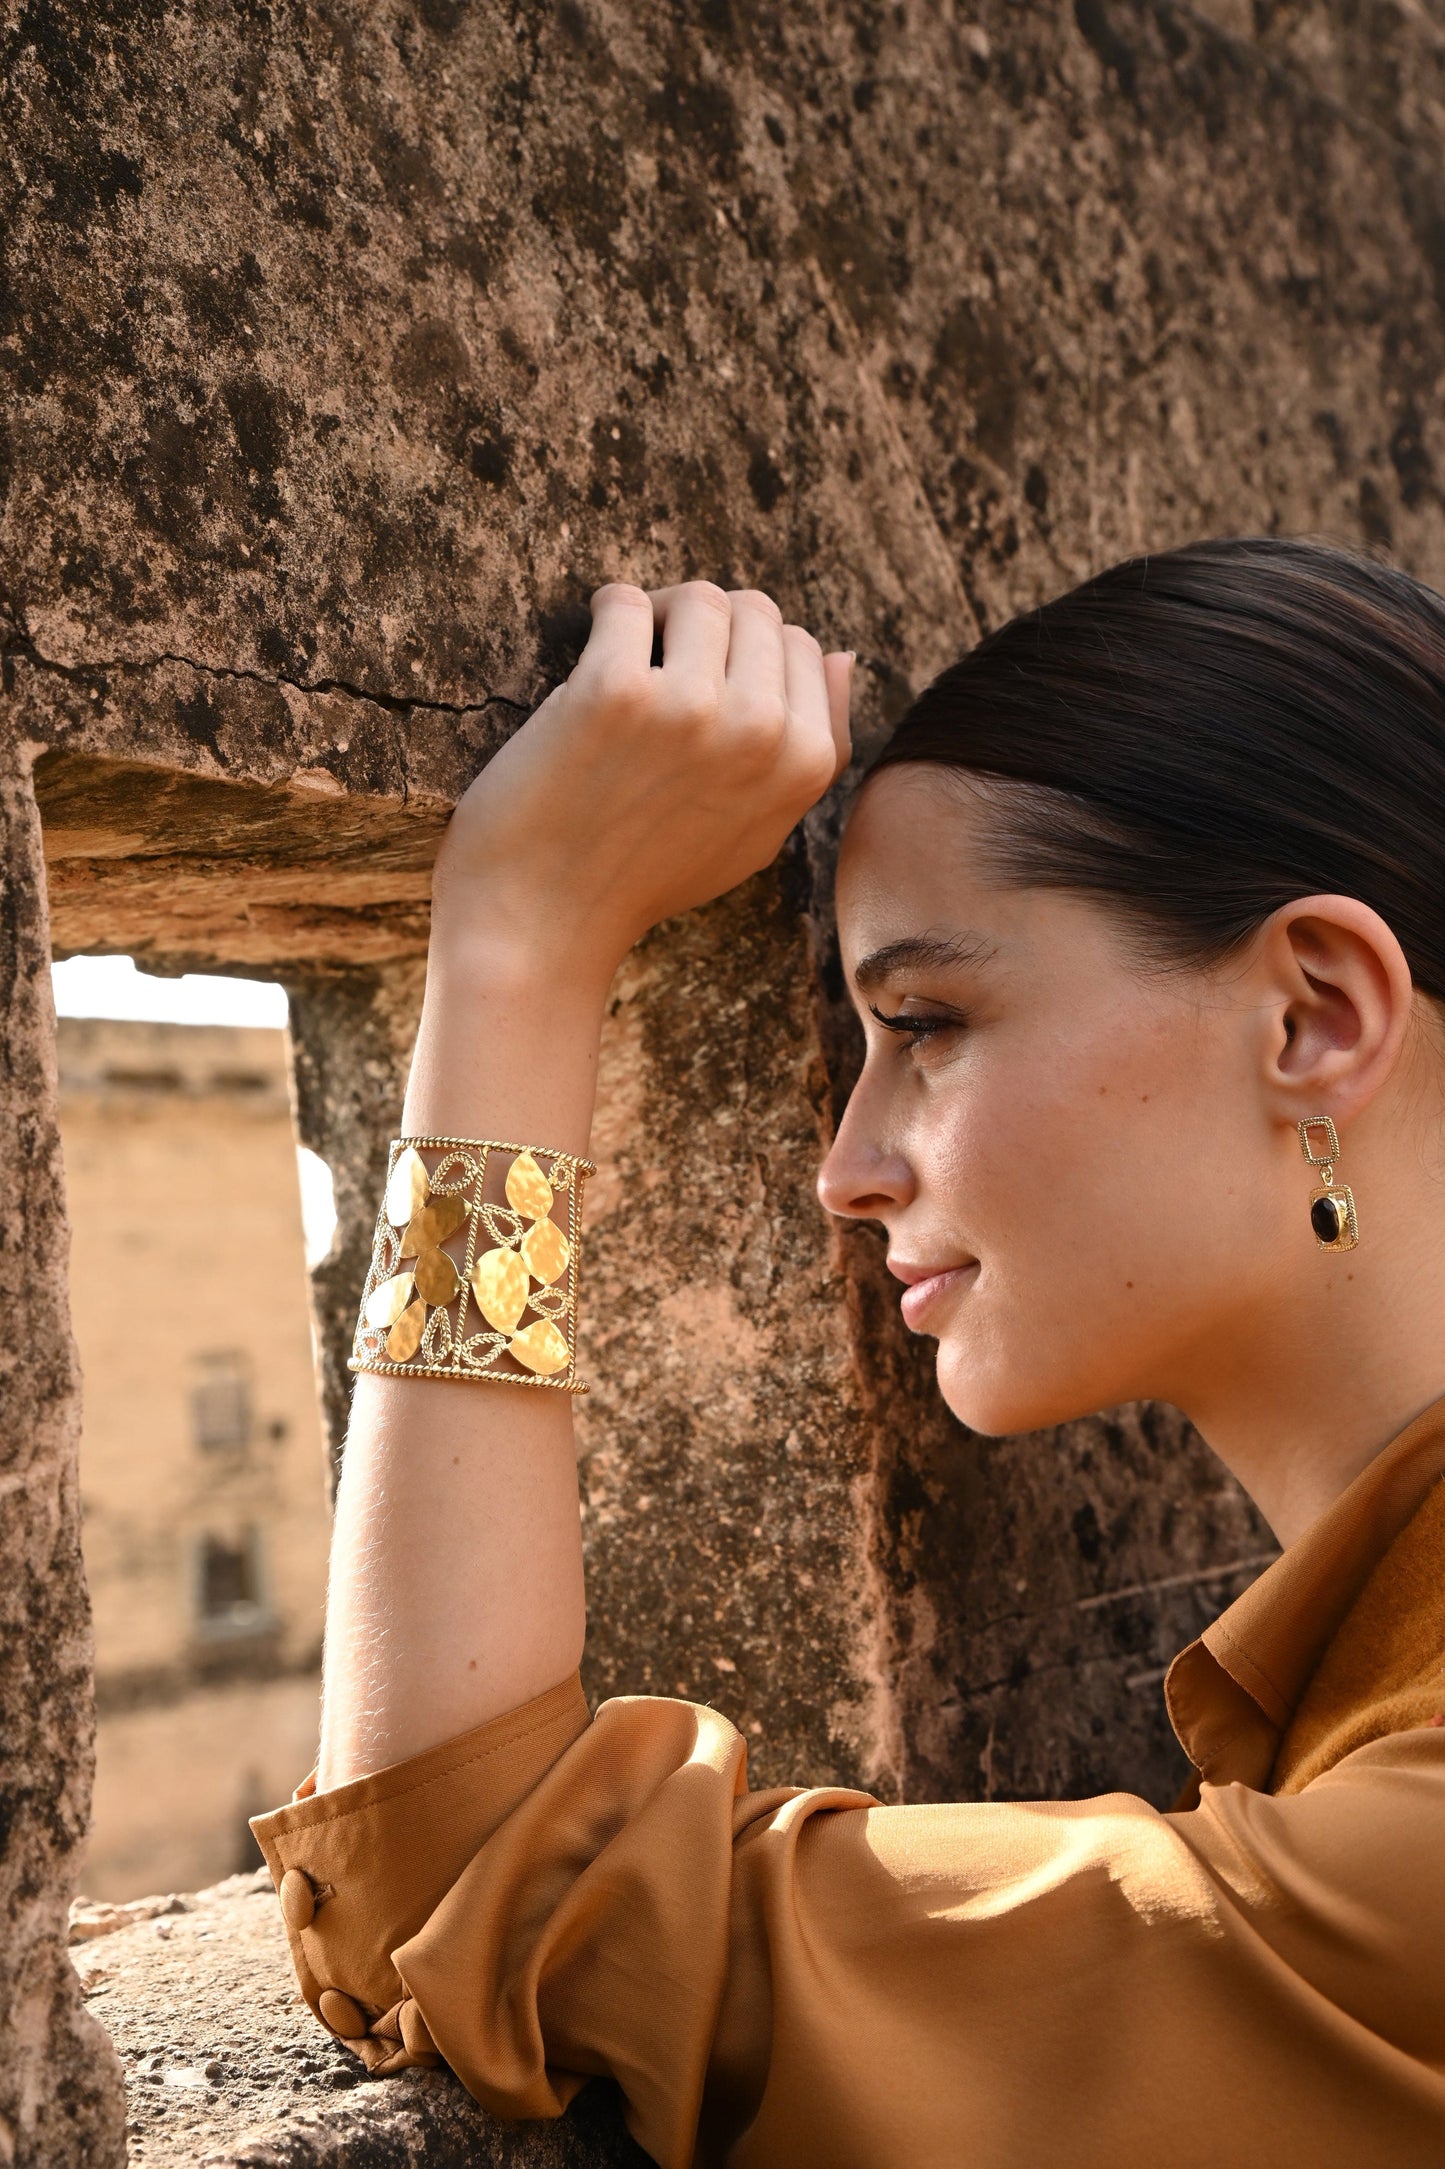 Christine Bekaert Jewelry Earring Sitha